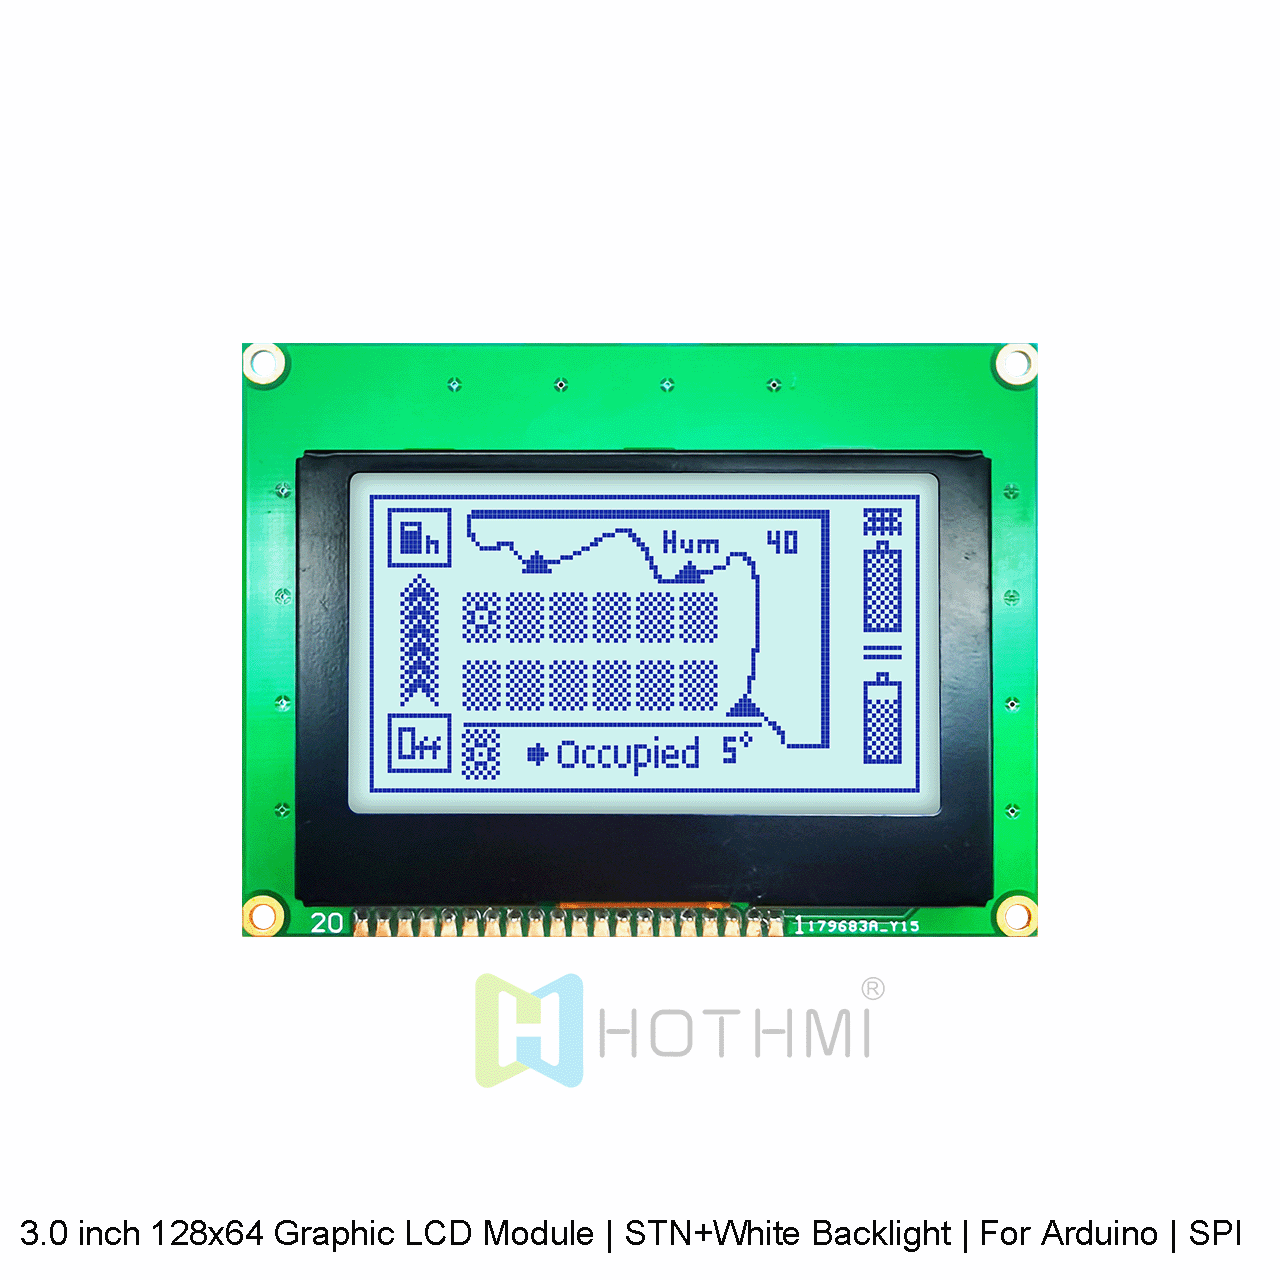 3.0 英寸 128x64 图形 LCD 模组 | STN+白色背光| 适用于 Arduino | SPI 接口 | 灰底蓝字图形LCD